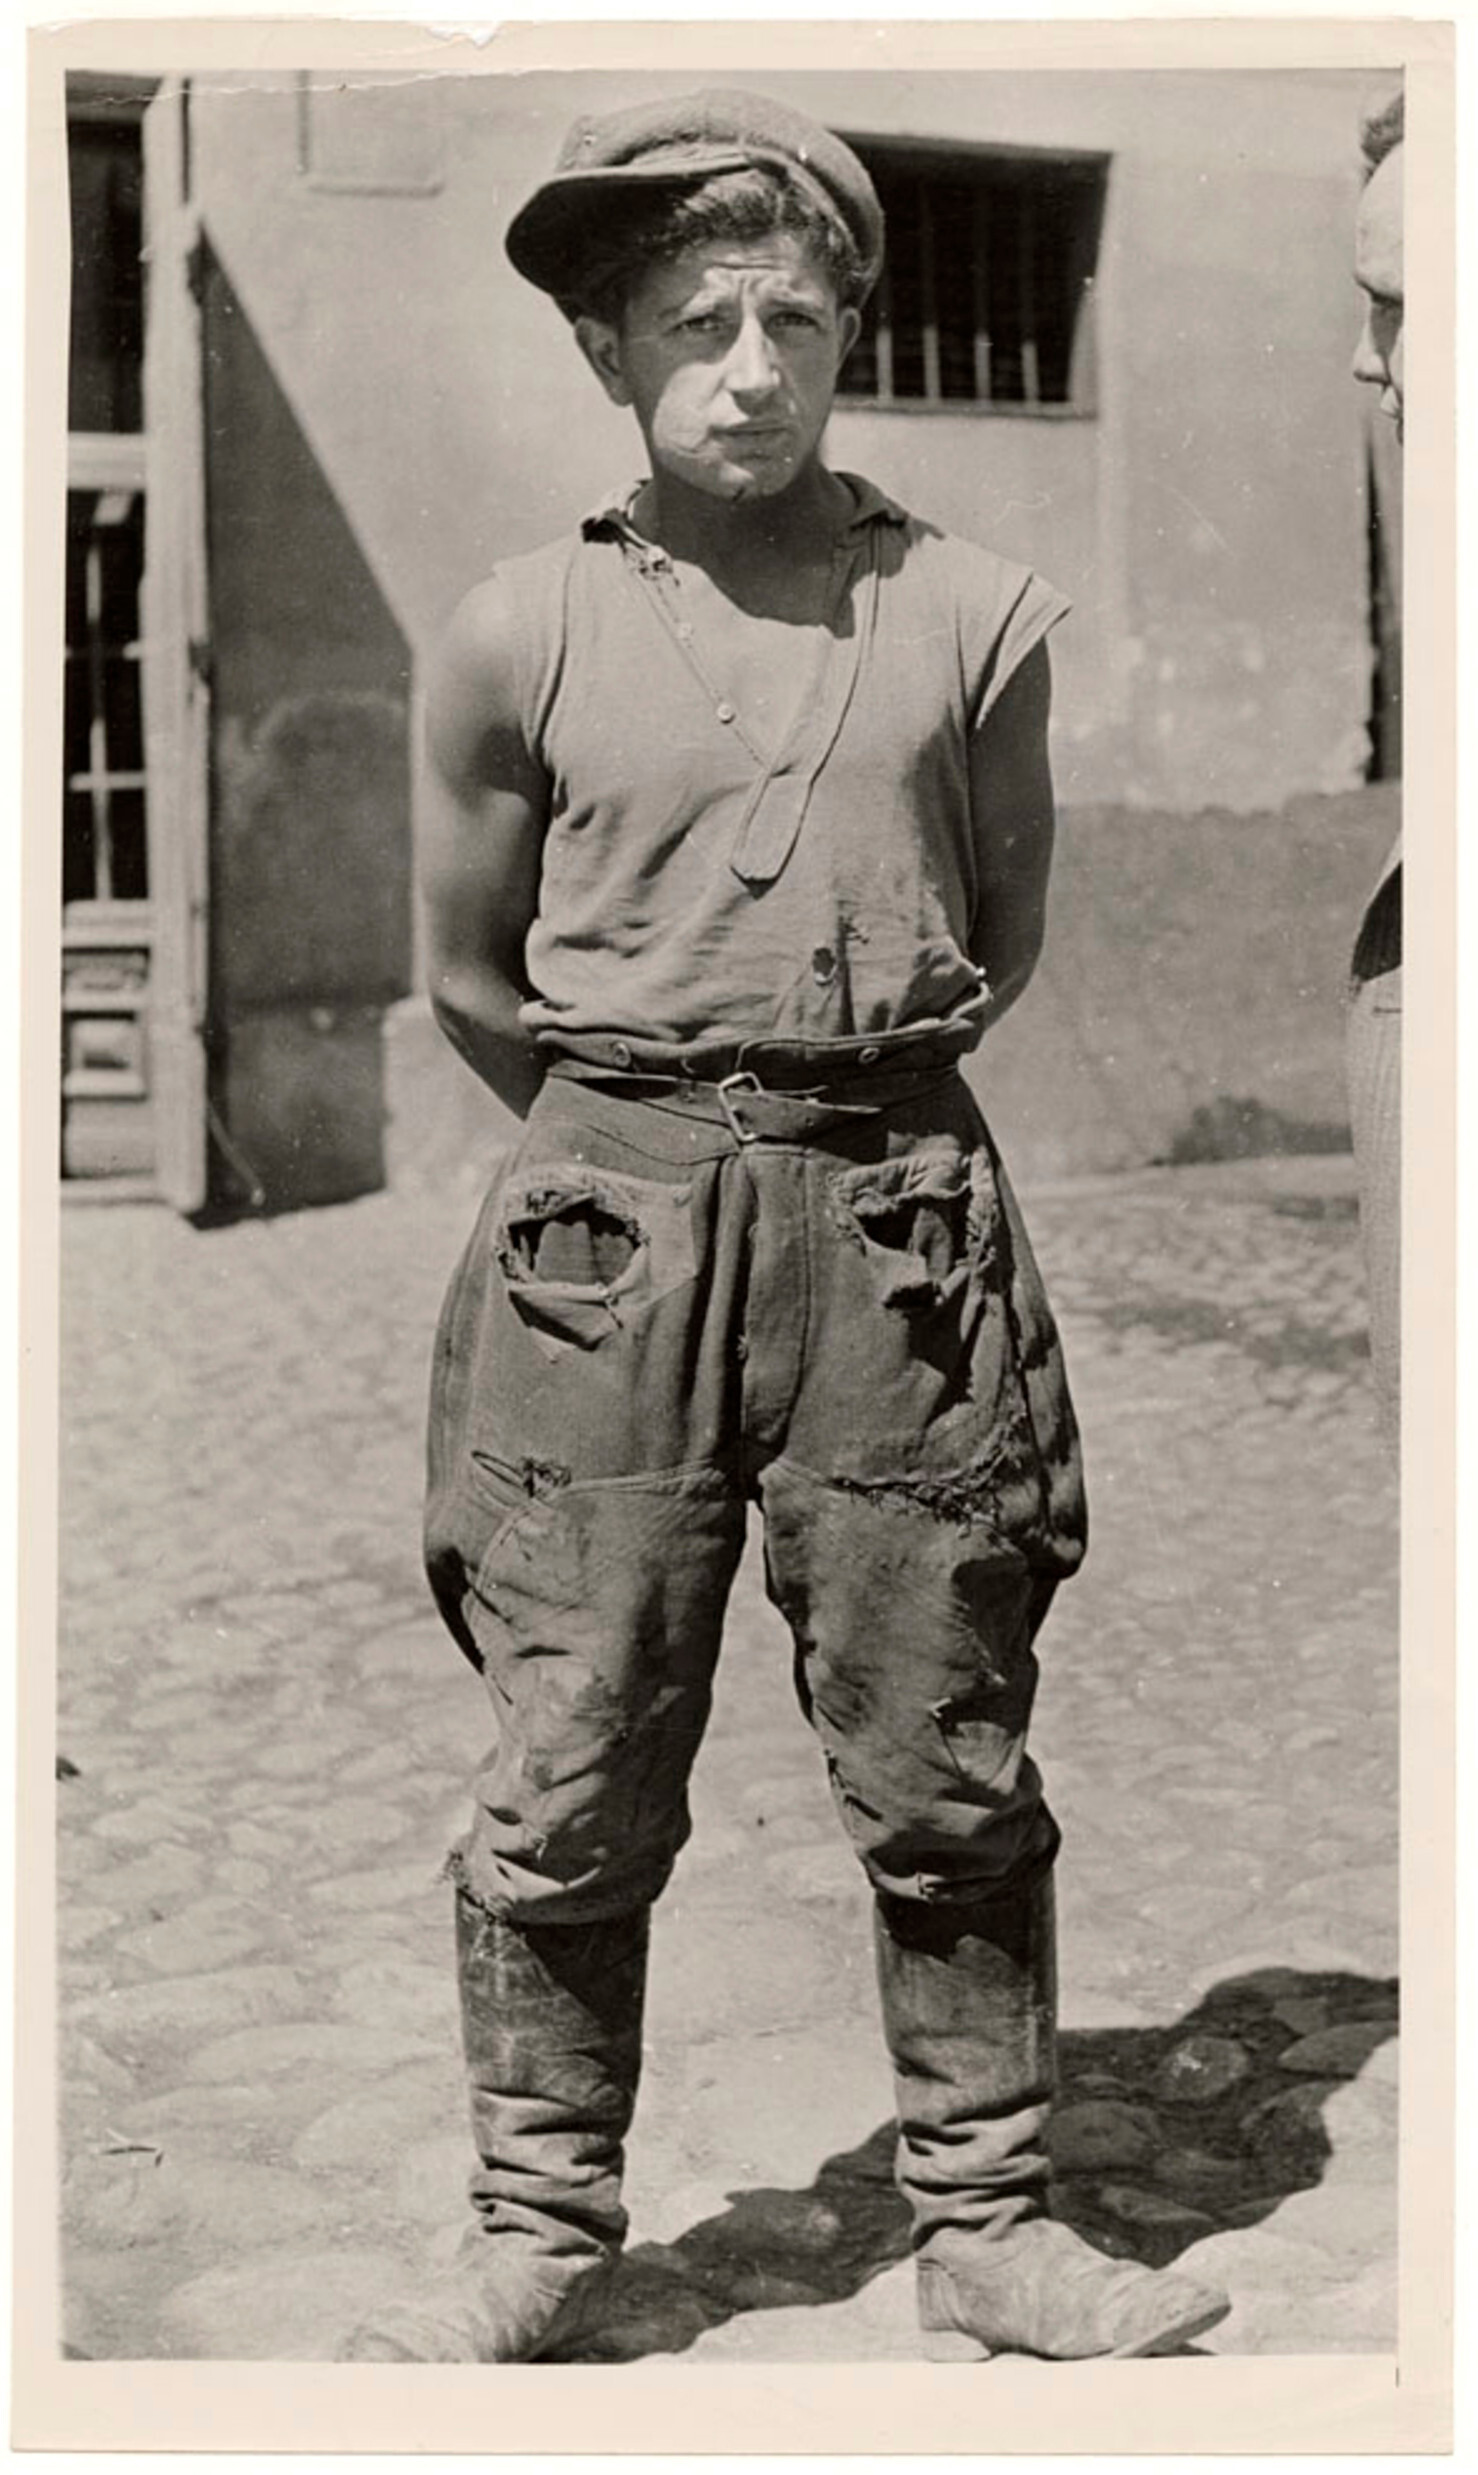 Перевозчик тяжелых грузов, Лодзь, ок. 1935-38 гг. Фотограф Роман Вишняк